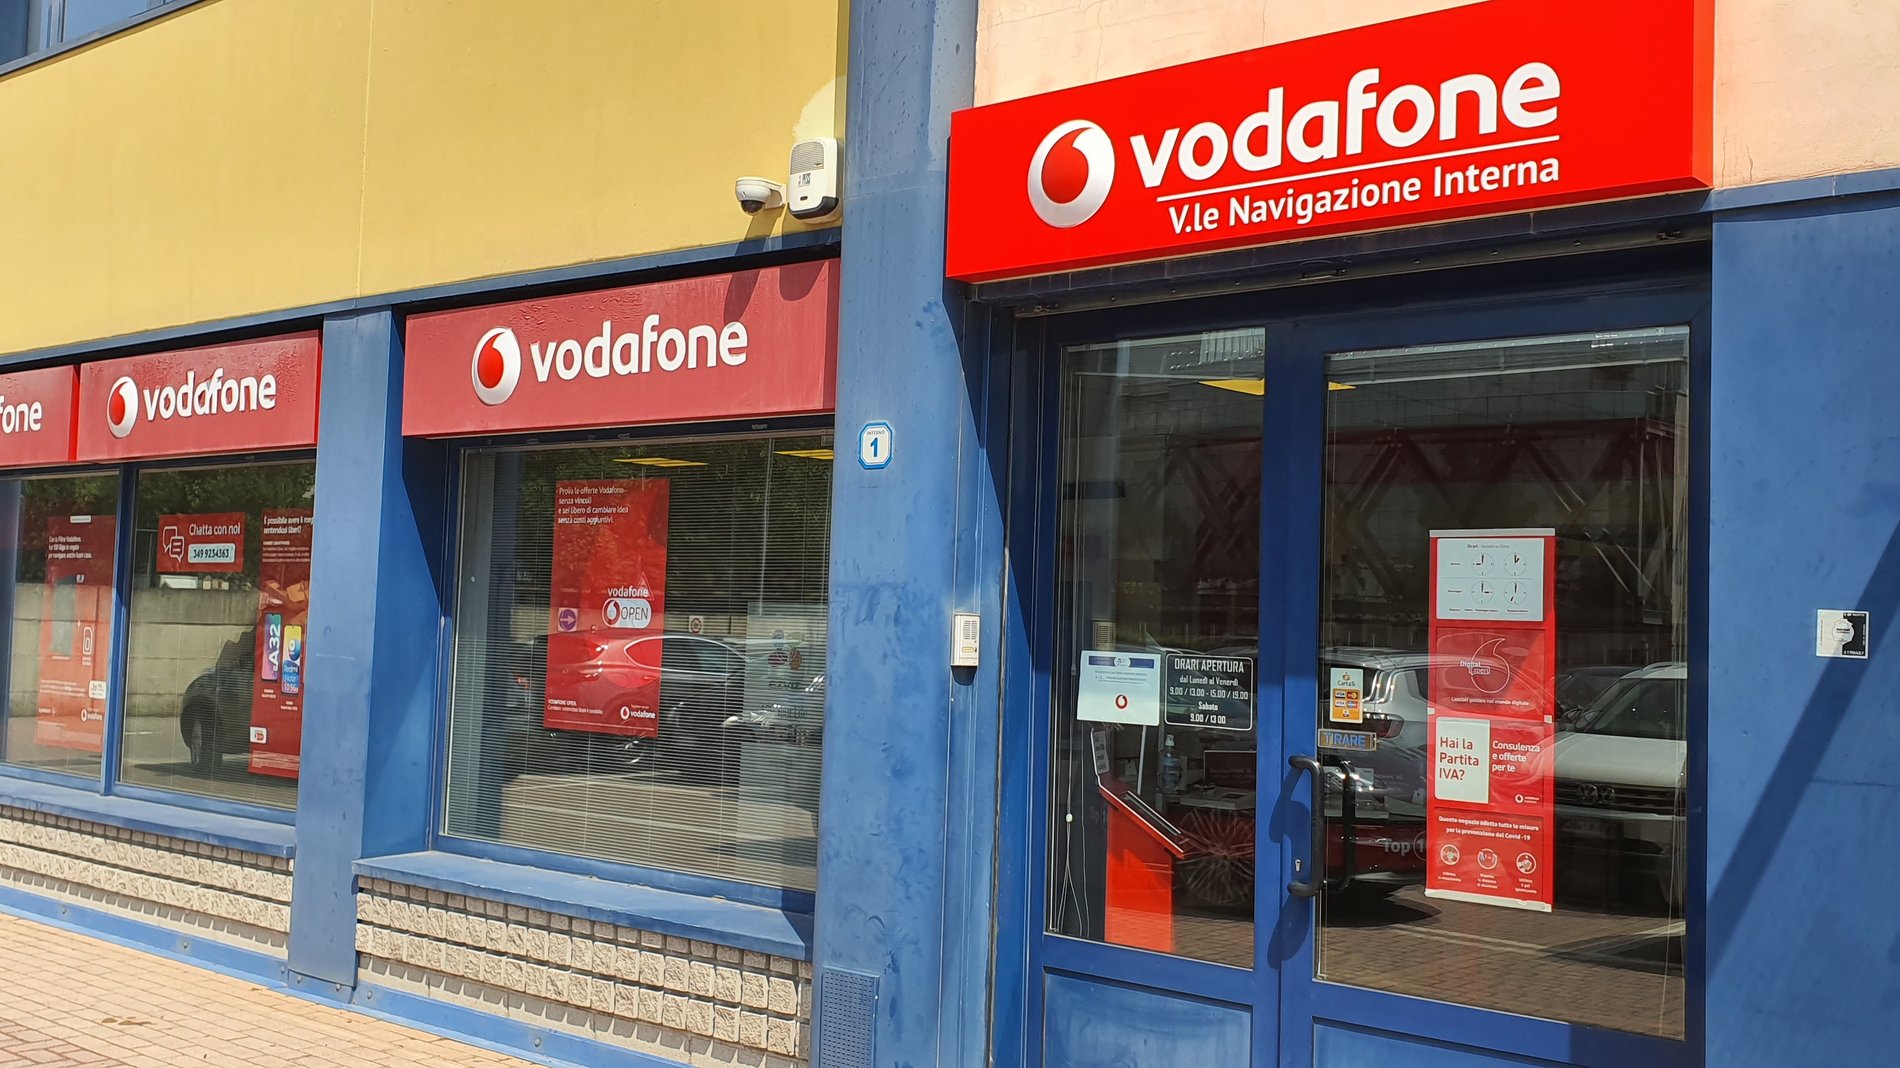 Vodafone Store | V.le Navigazione Interna